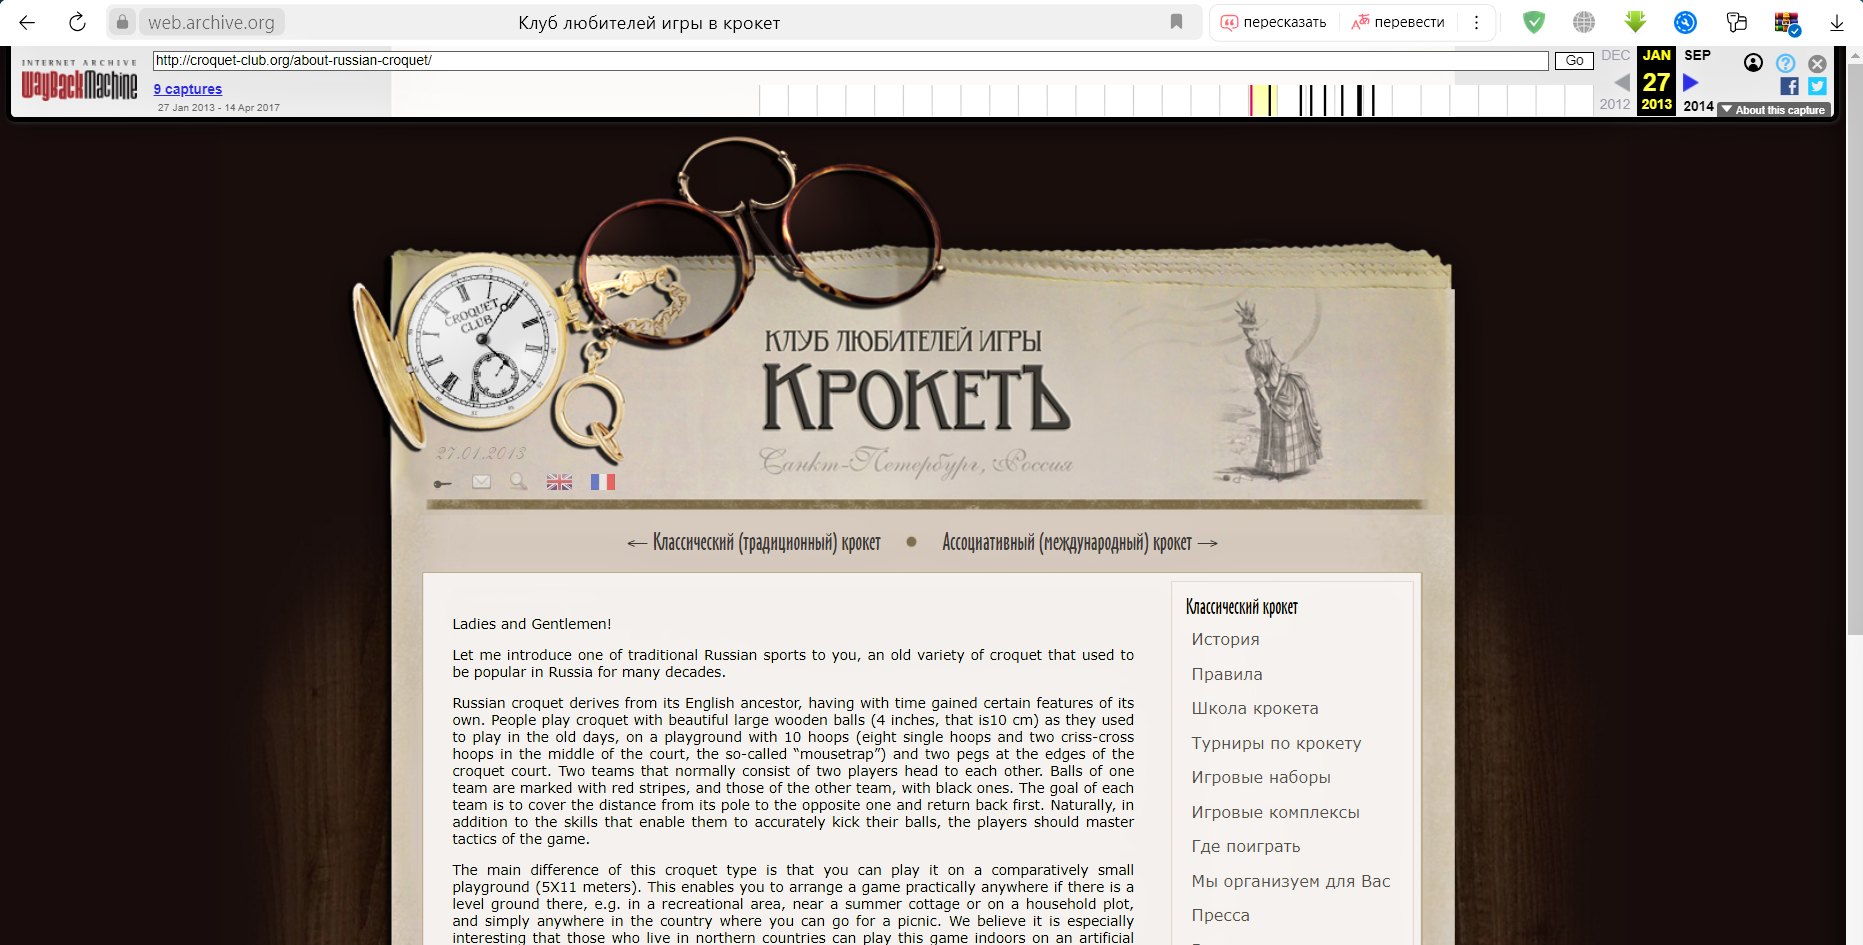 Скриншот с сайта web.archive.org